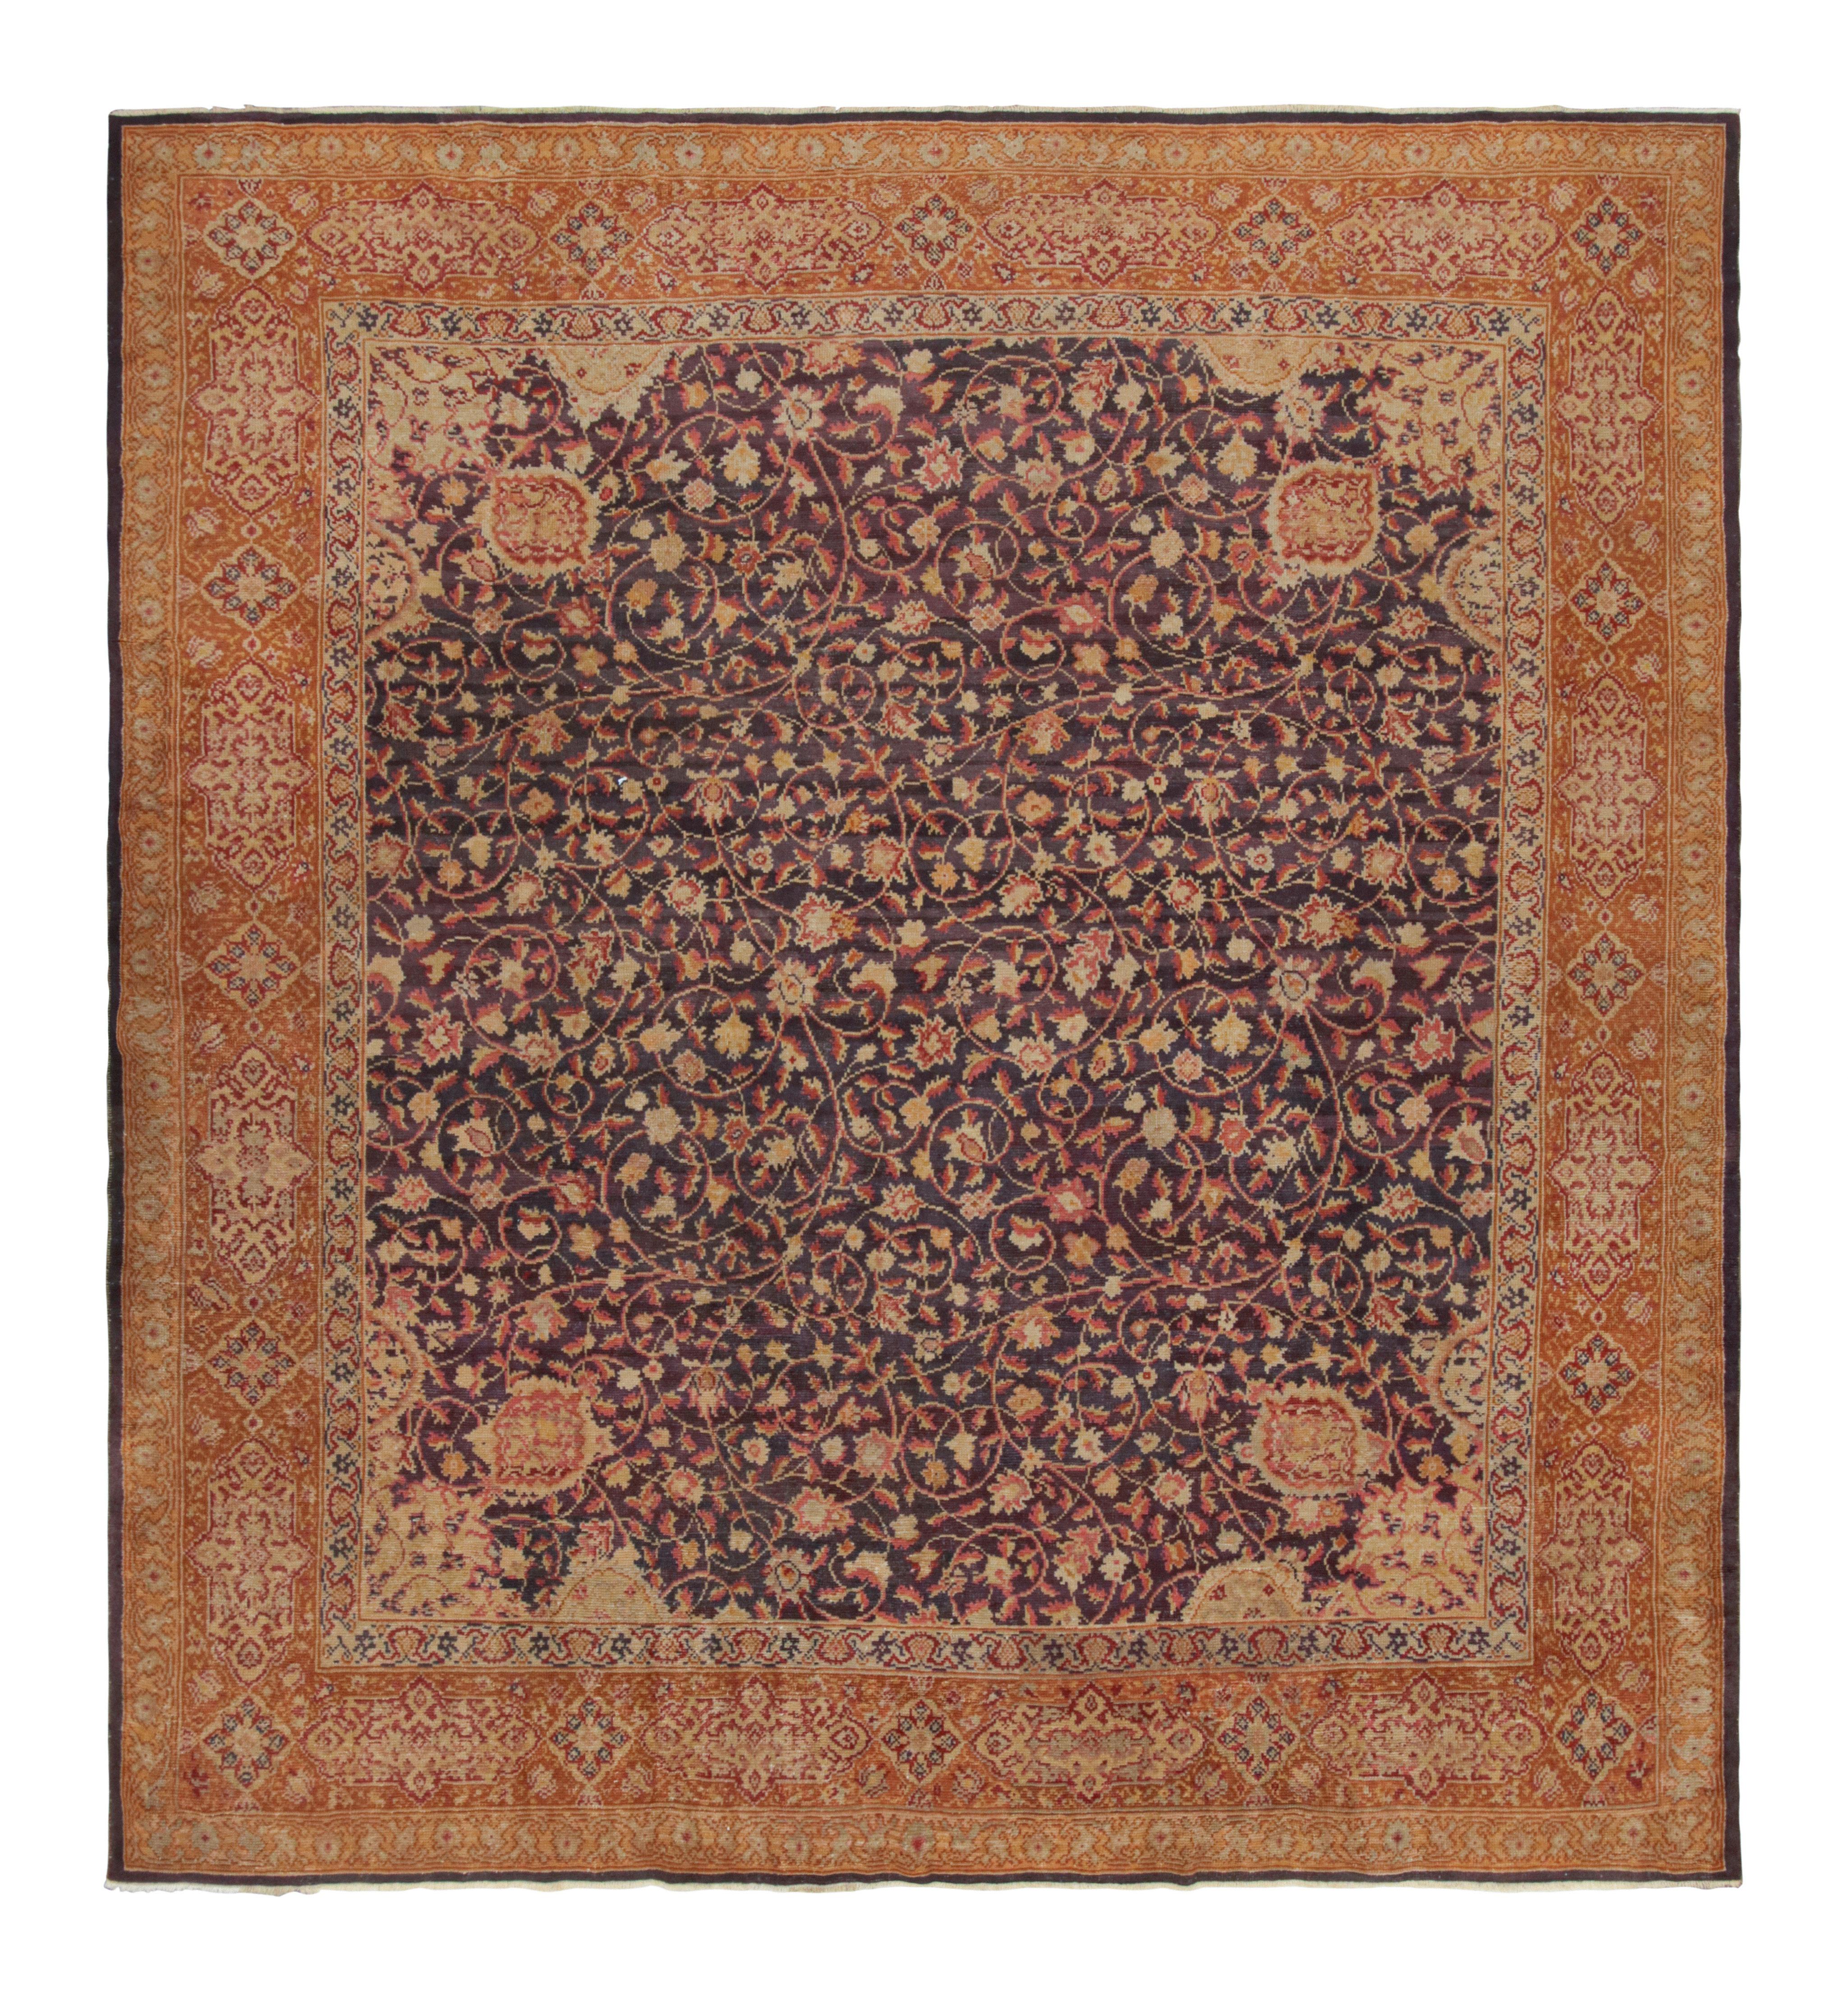 Antiker Teppich im Axminster-Stil, handgeknüpft aus Wolle, beige mit Blumenmuster